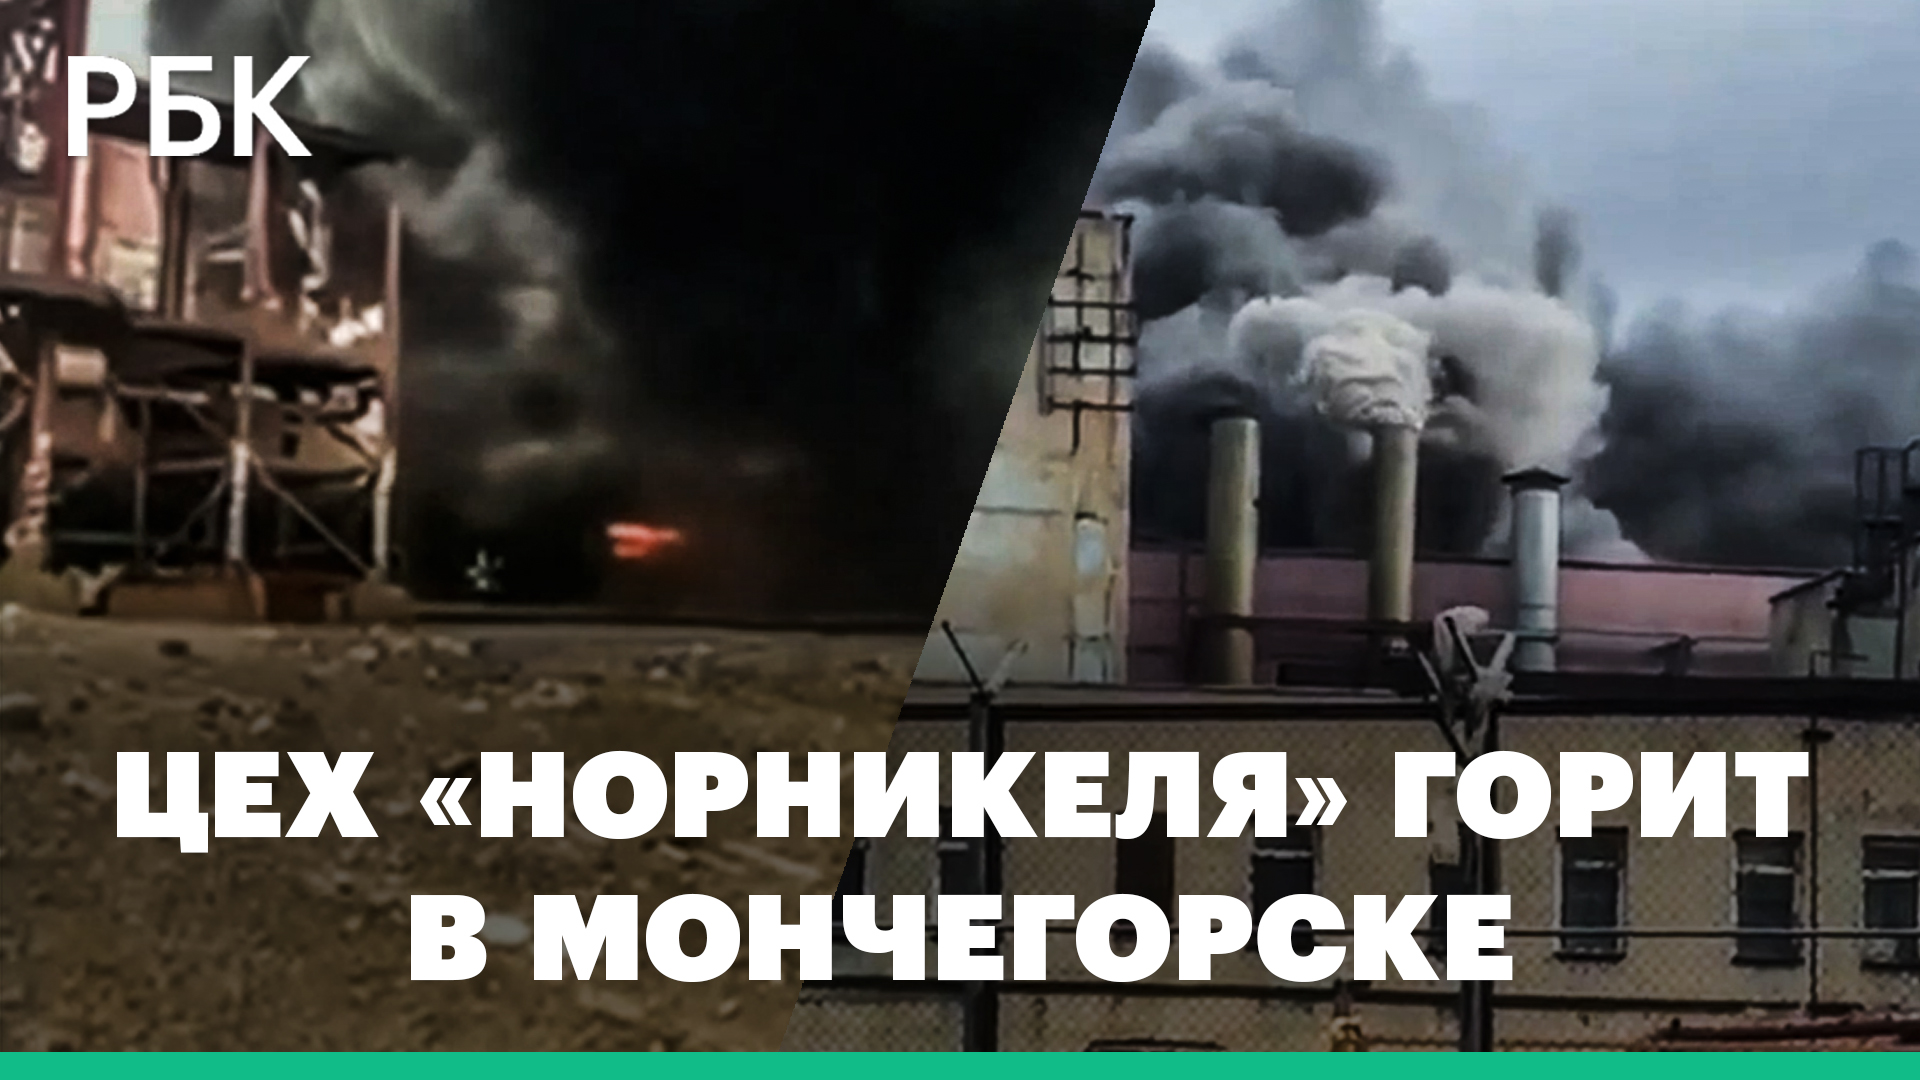 В Мончегорске, на принадлежащем «Норникелю» предприятии, загорелся цех: видео очевидцев